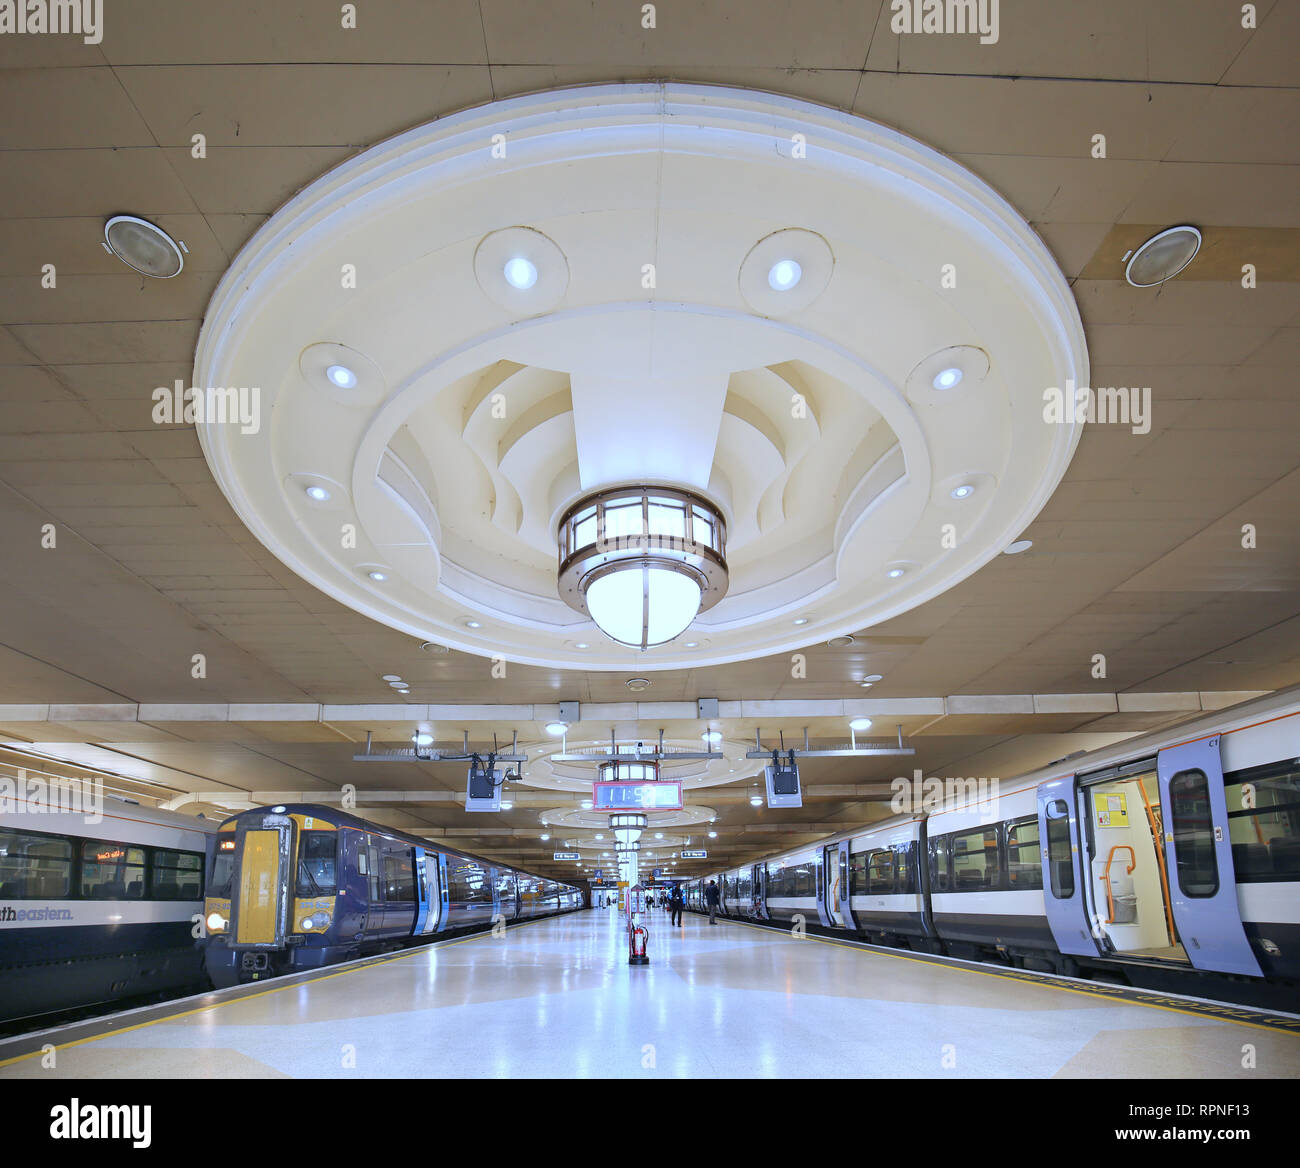 Plataforma en Londres la estación de trenes Charing Cross mostrando el techo con iluminación de estilo art decó instalado durante la década de los 90's la reconstrucción. Foto de stock